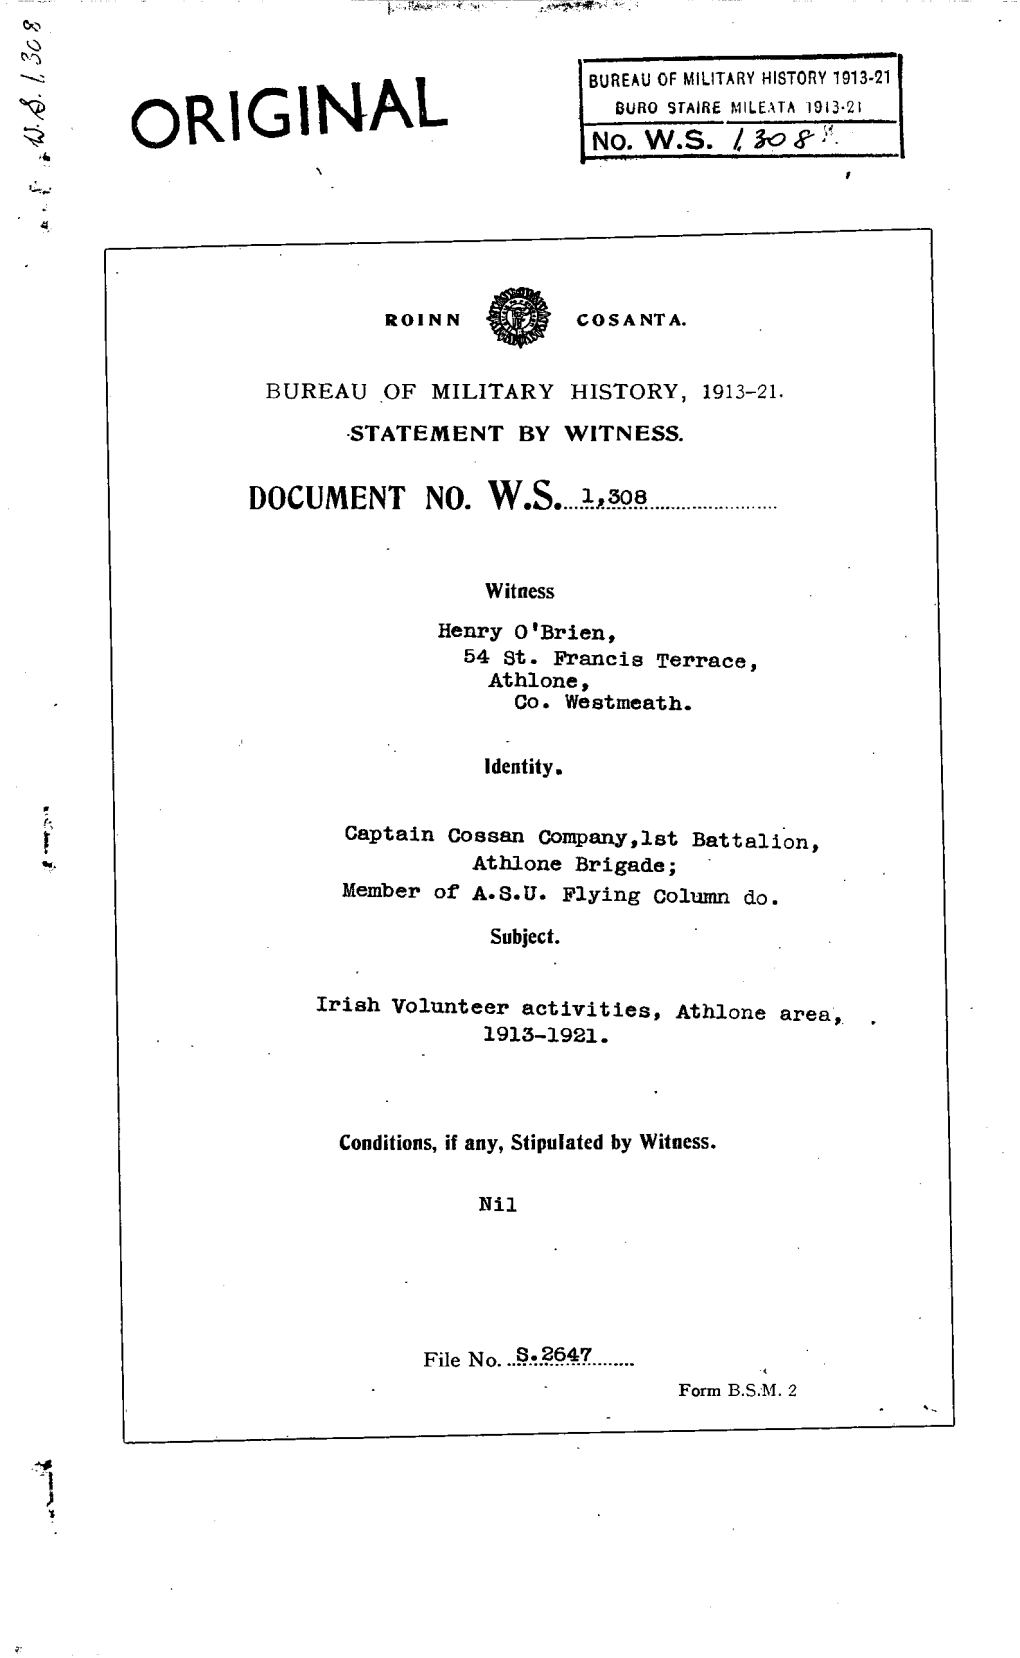 Roinn Consanta. Bureau of Military History, 1913-21